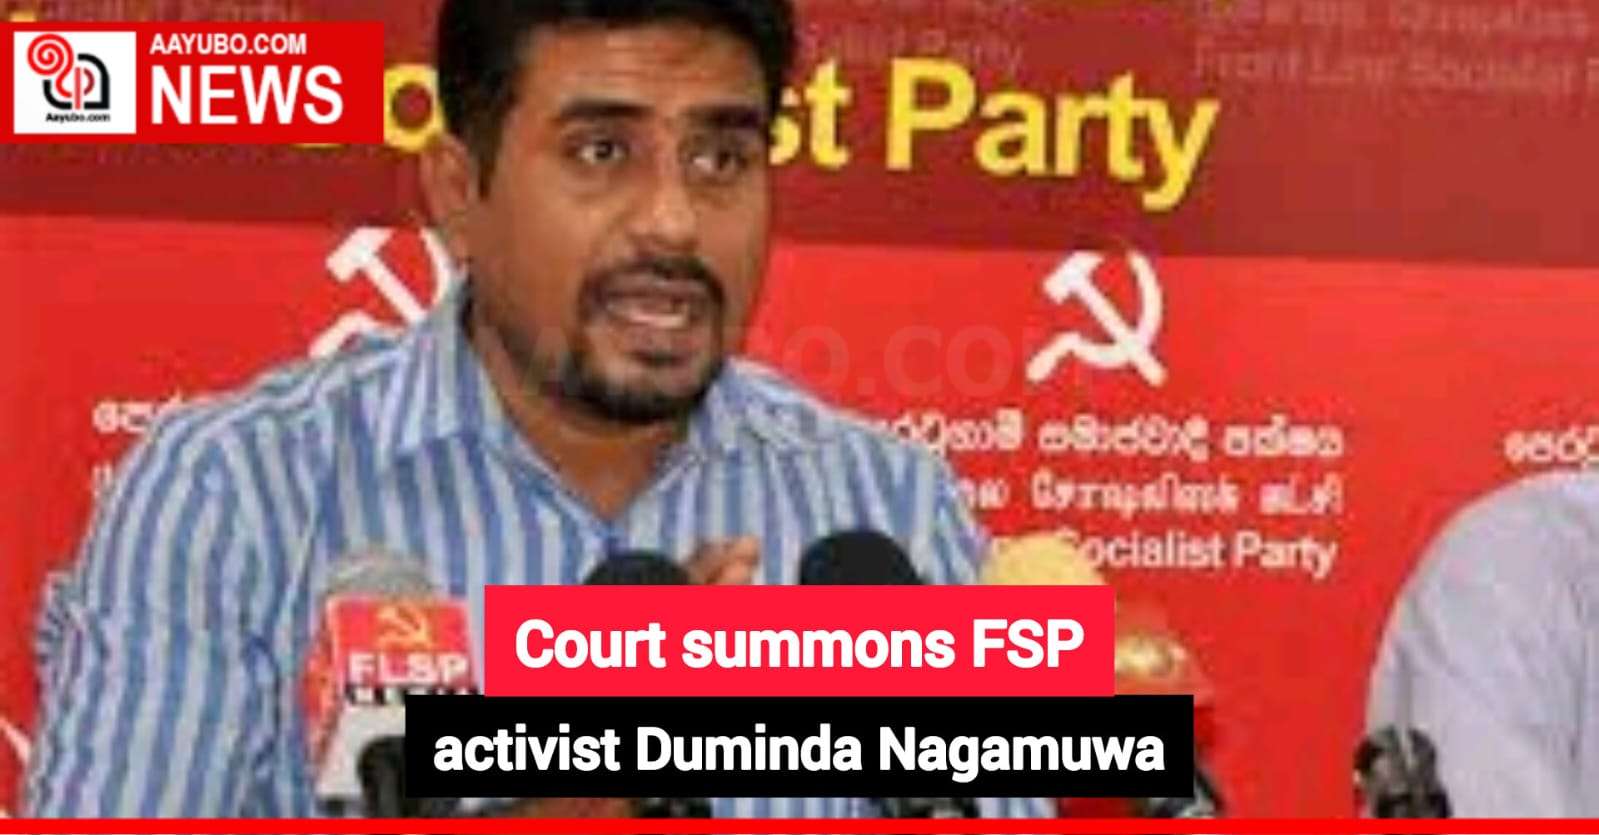 Court summons FSP activist Duminda Nagamuwa